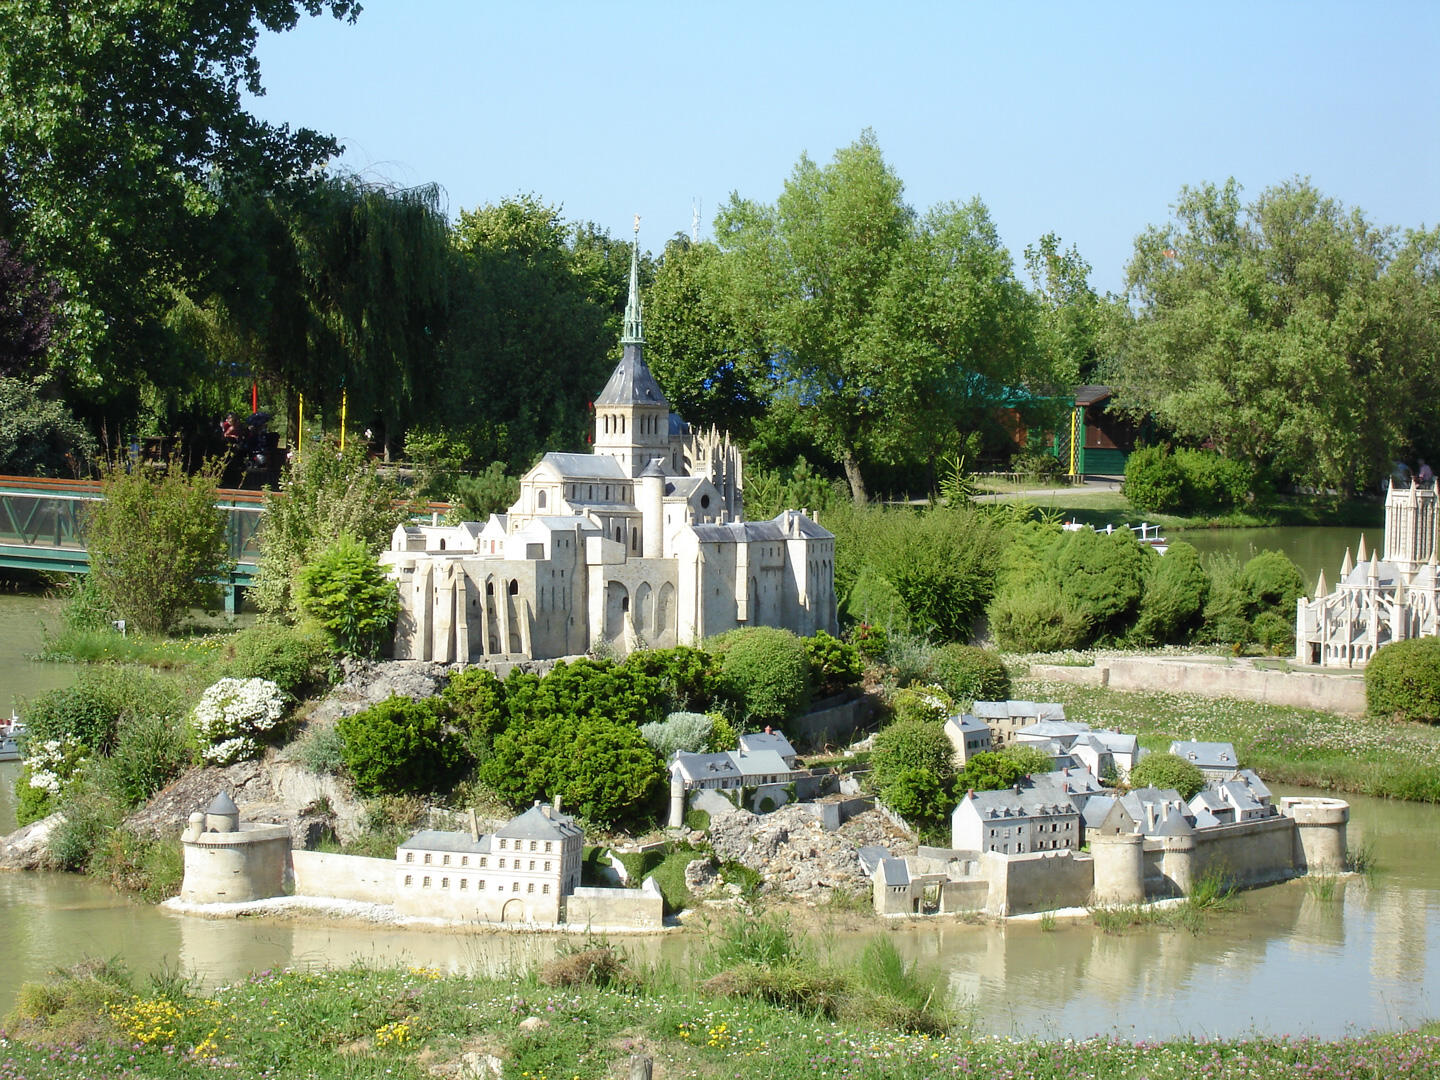 Modèle réduit détaillé d'un château français entouré de bâtiments historiques miniatures et de verdure, reflétant le patrimoine de la France au parc France Miniature."